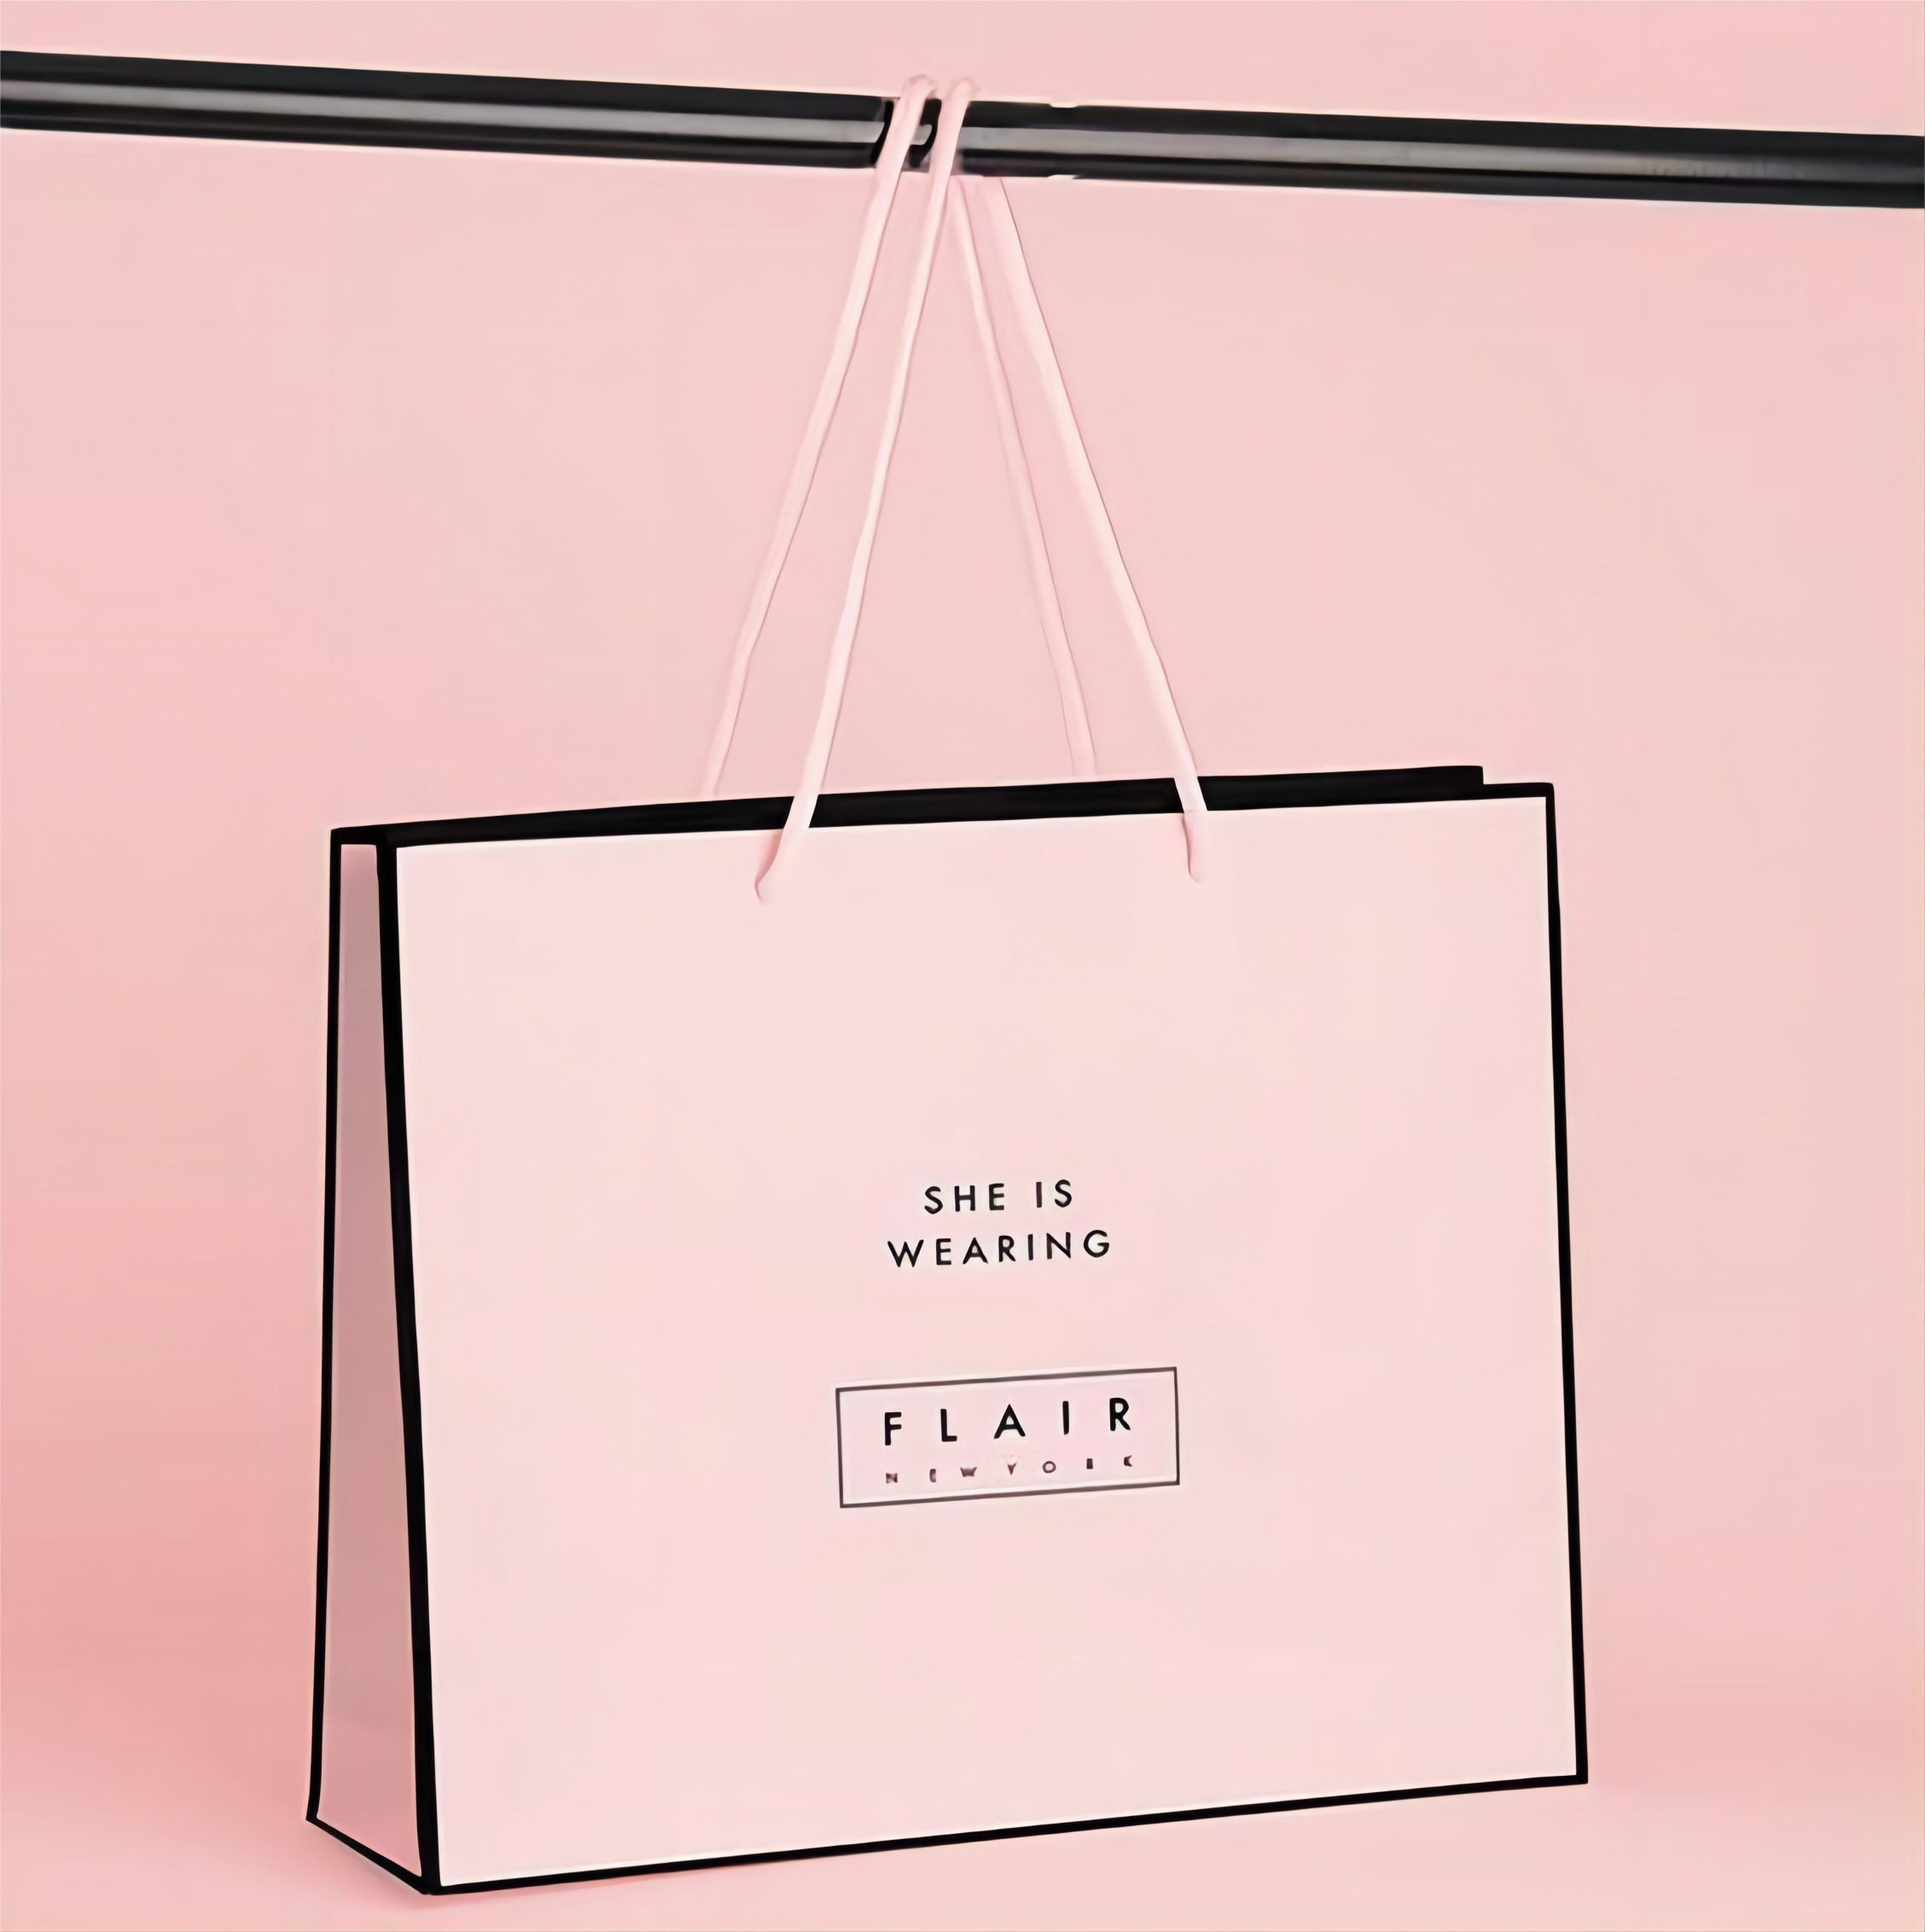 กระเป๋ากระดาษ yadao ถุงช้อปปิ้งสีชมพูพร้อมลิ้นเชือกสีชมพูเดียวกัน